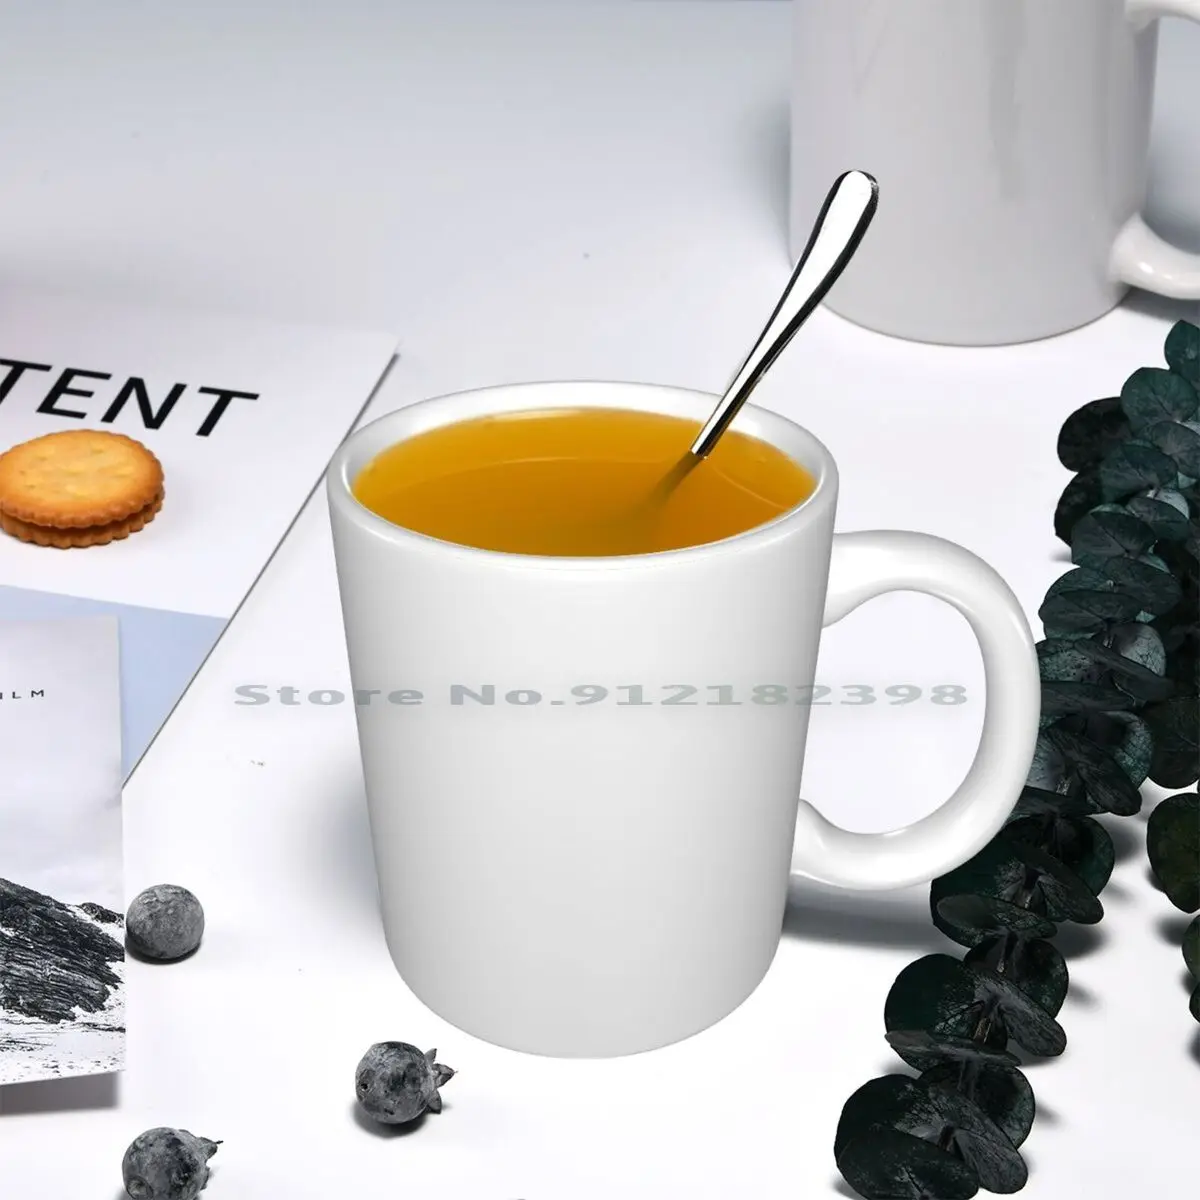 You Just Got Litt Up Coffee Mug Louis Litt Mug Cup – We Got Good